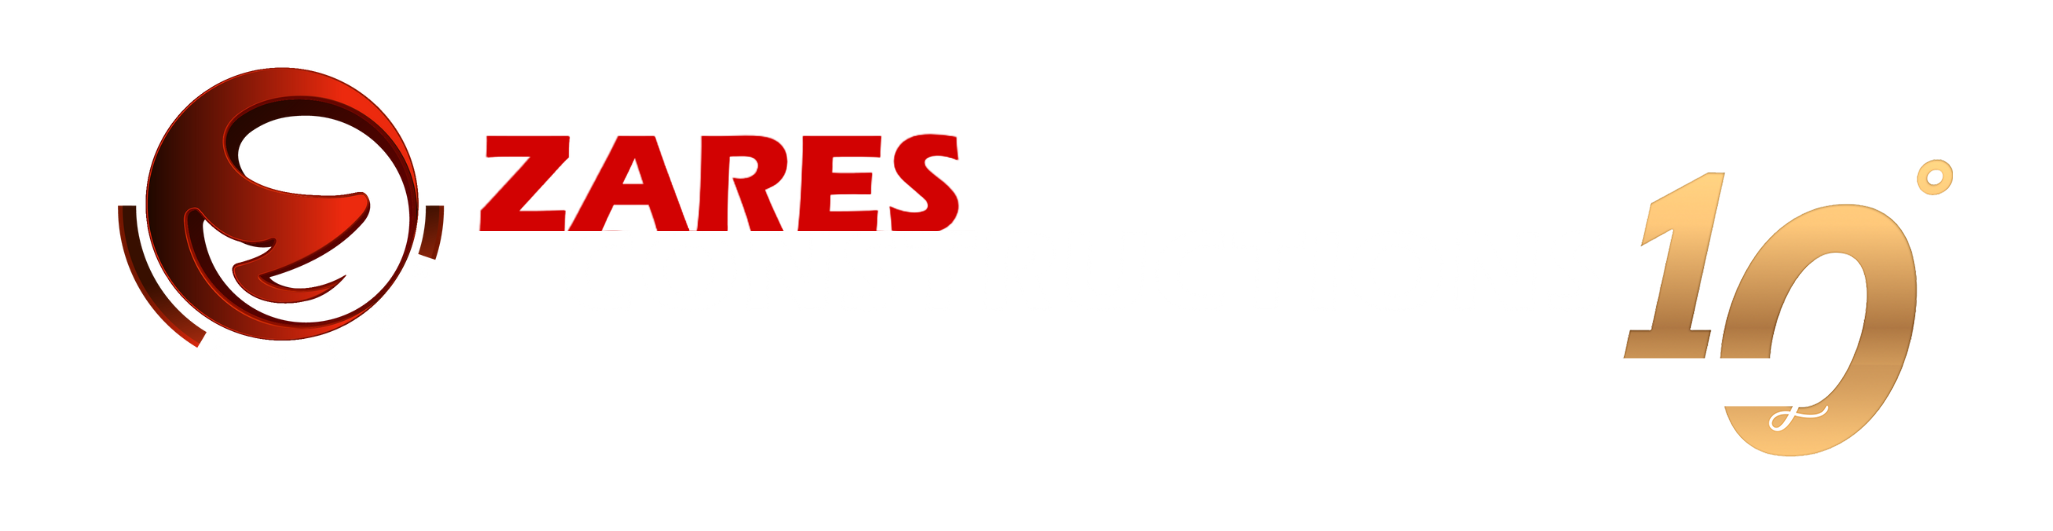 zaresconstructions.com